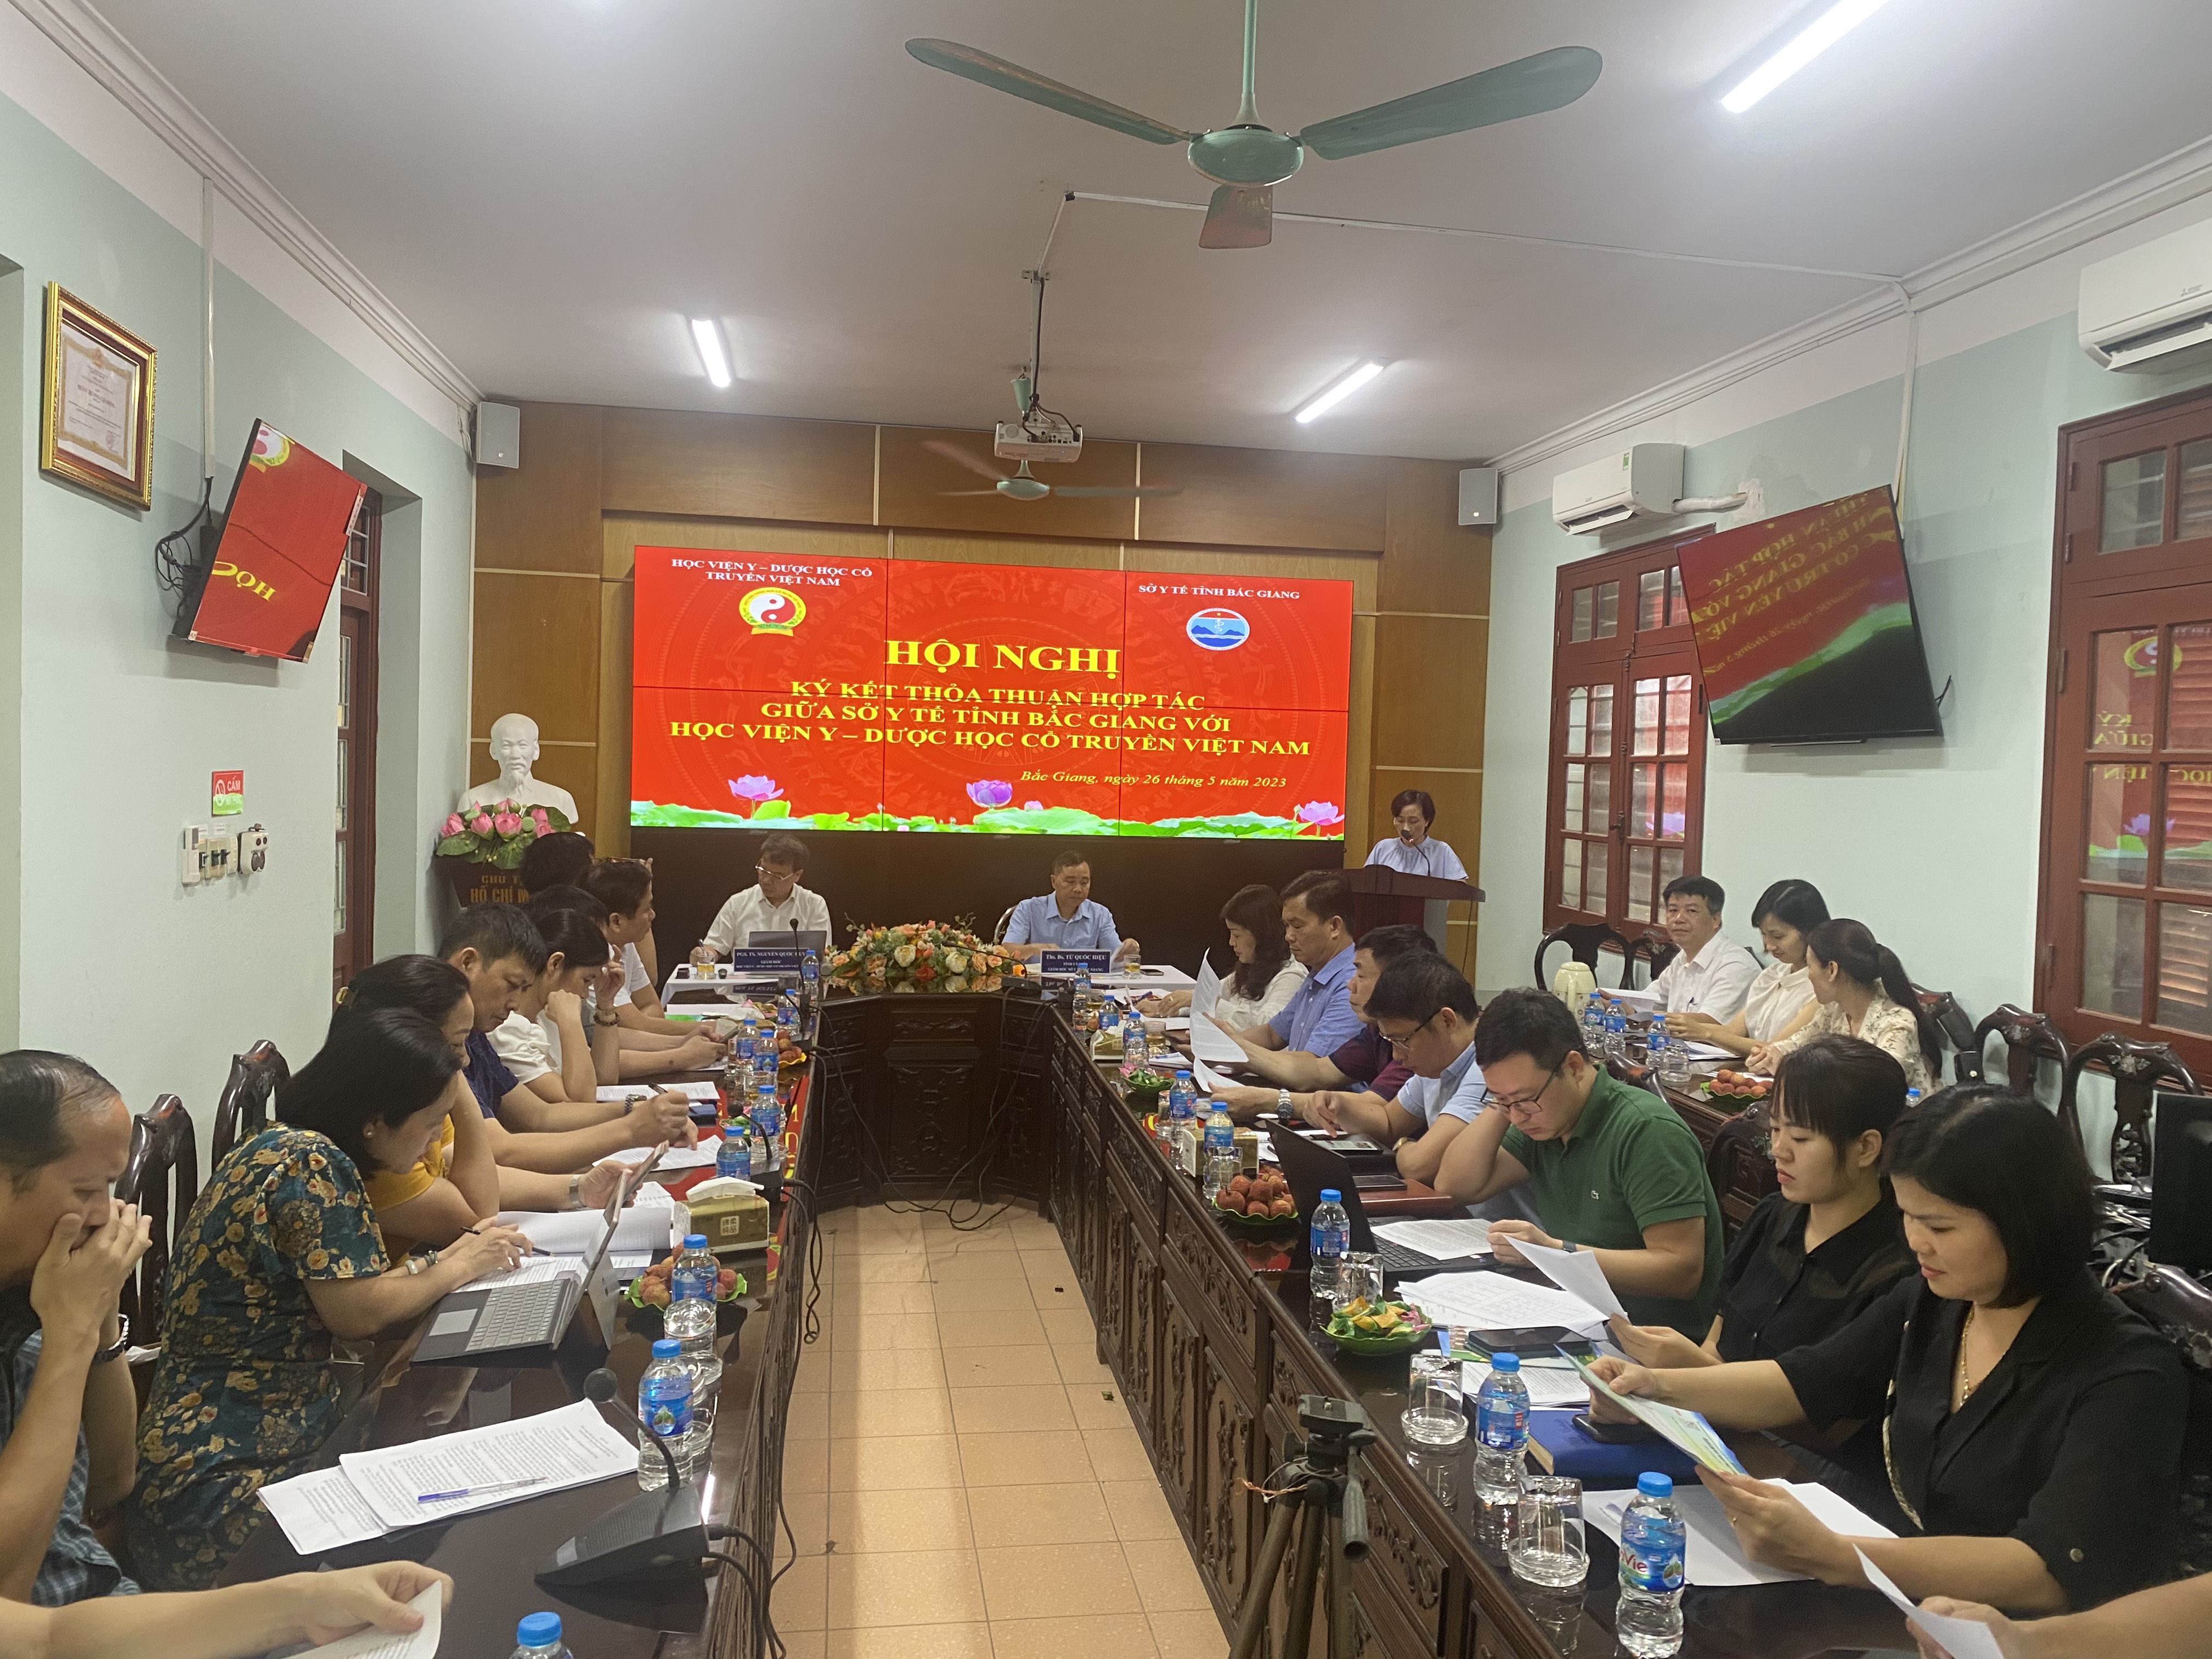 Học viện Y – Dược học cổ truyền Việt Nam hợp tác với Sở Y tế tỉnh Bắc Giang